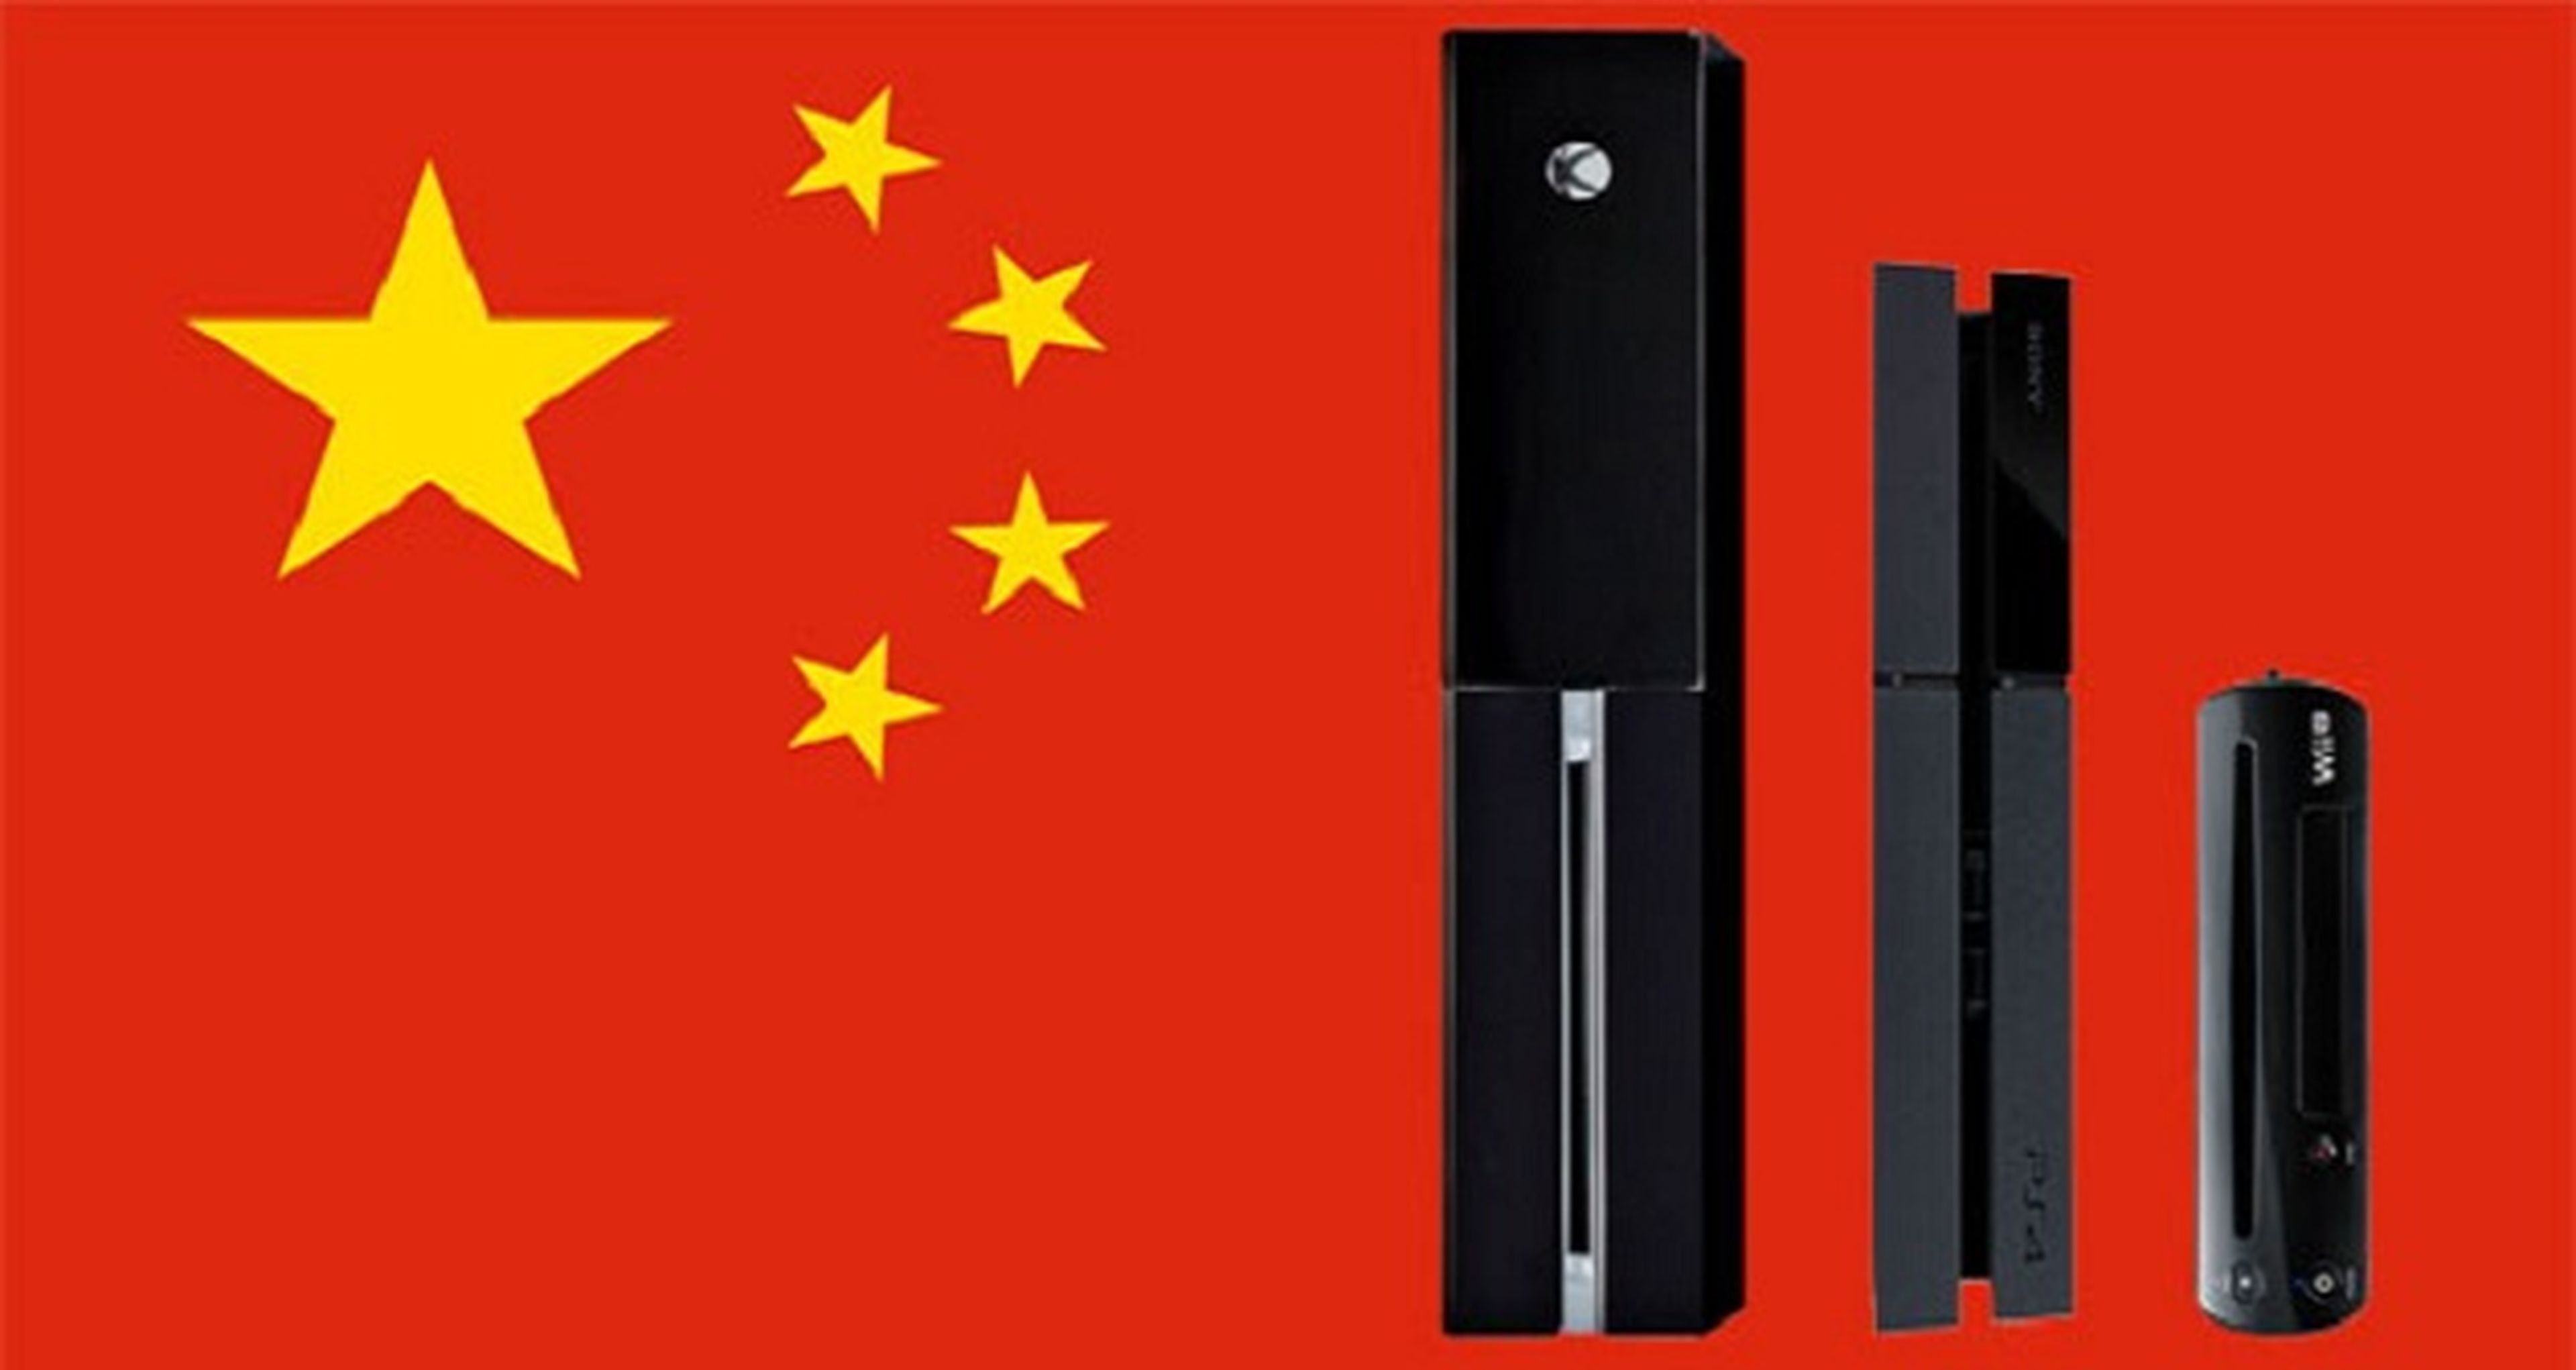 Los ingresos de los videojuegos en China durante 2013